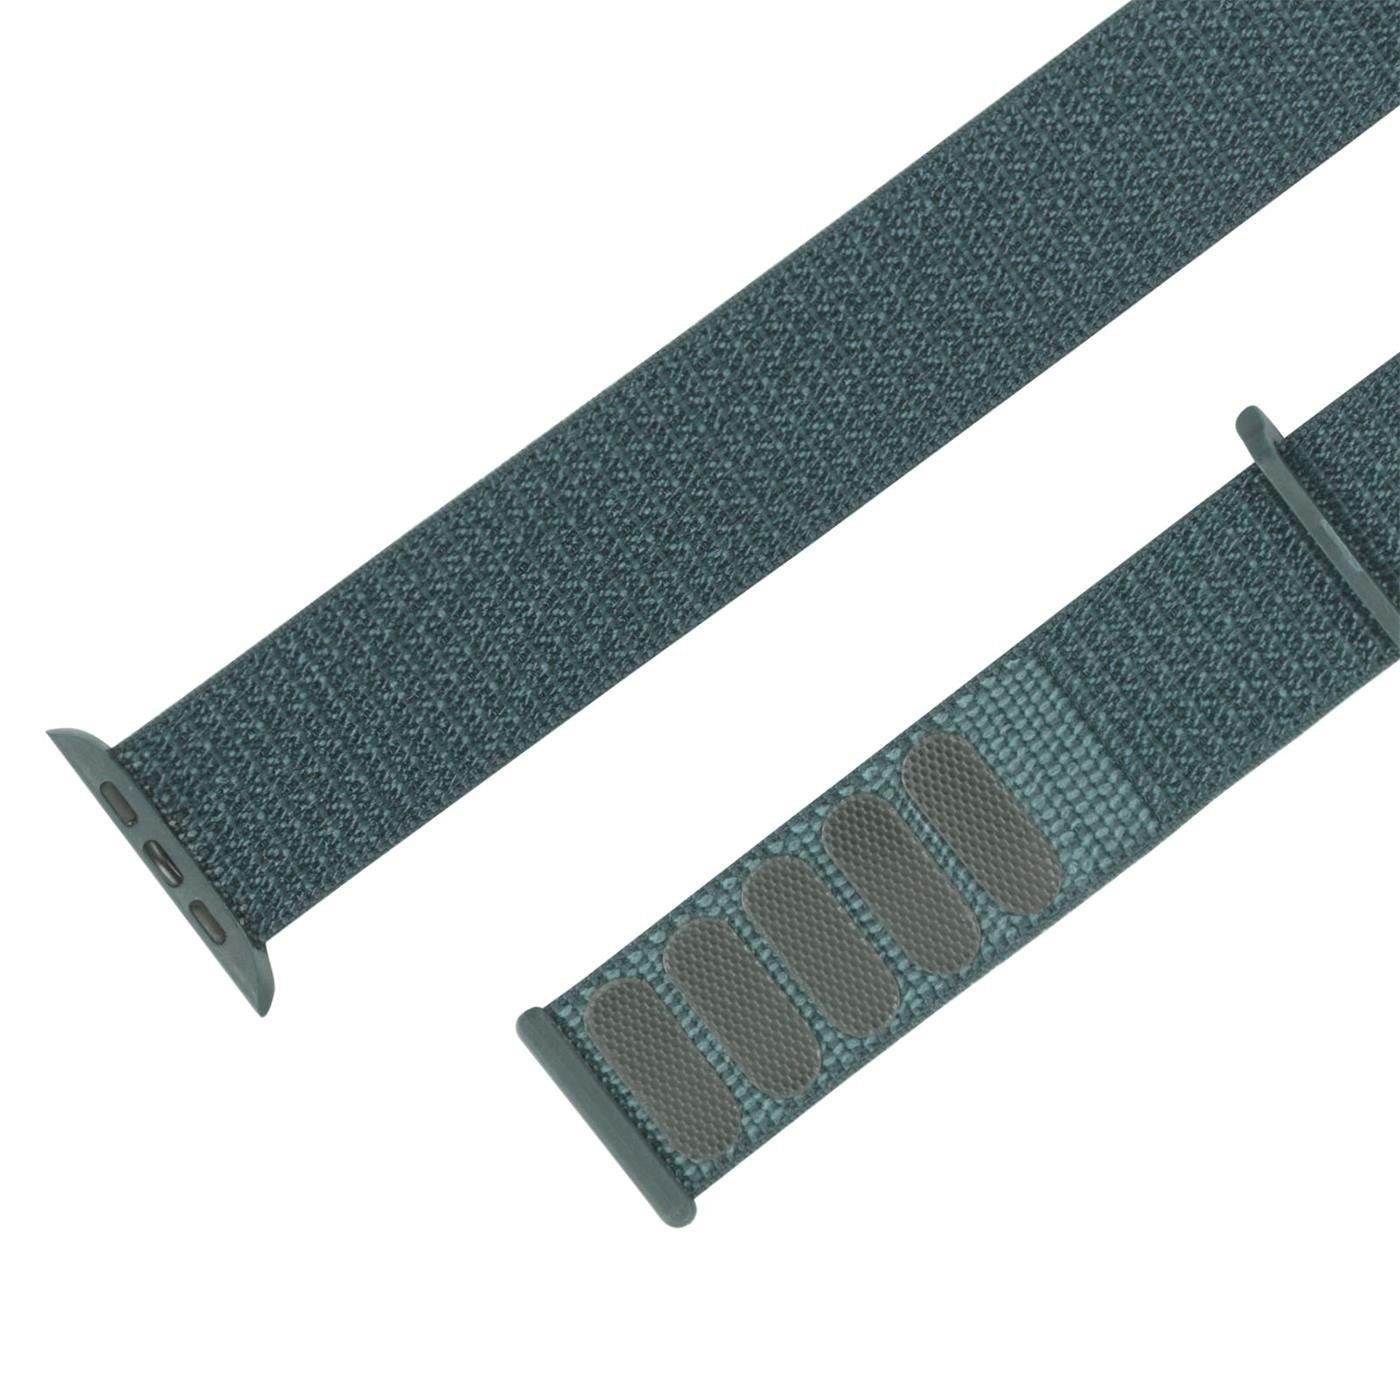 Band CoolGadget Watch Apple Smartwatch-Armband mit Ersatz 8 41mm Uhren für Nylon Stoff Gehäuse, mit Grün Klettverschluss Serie